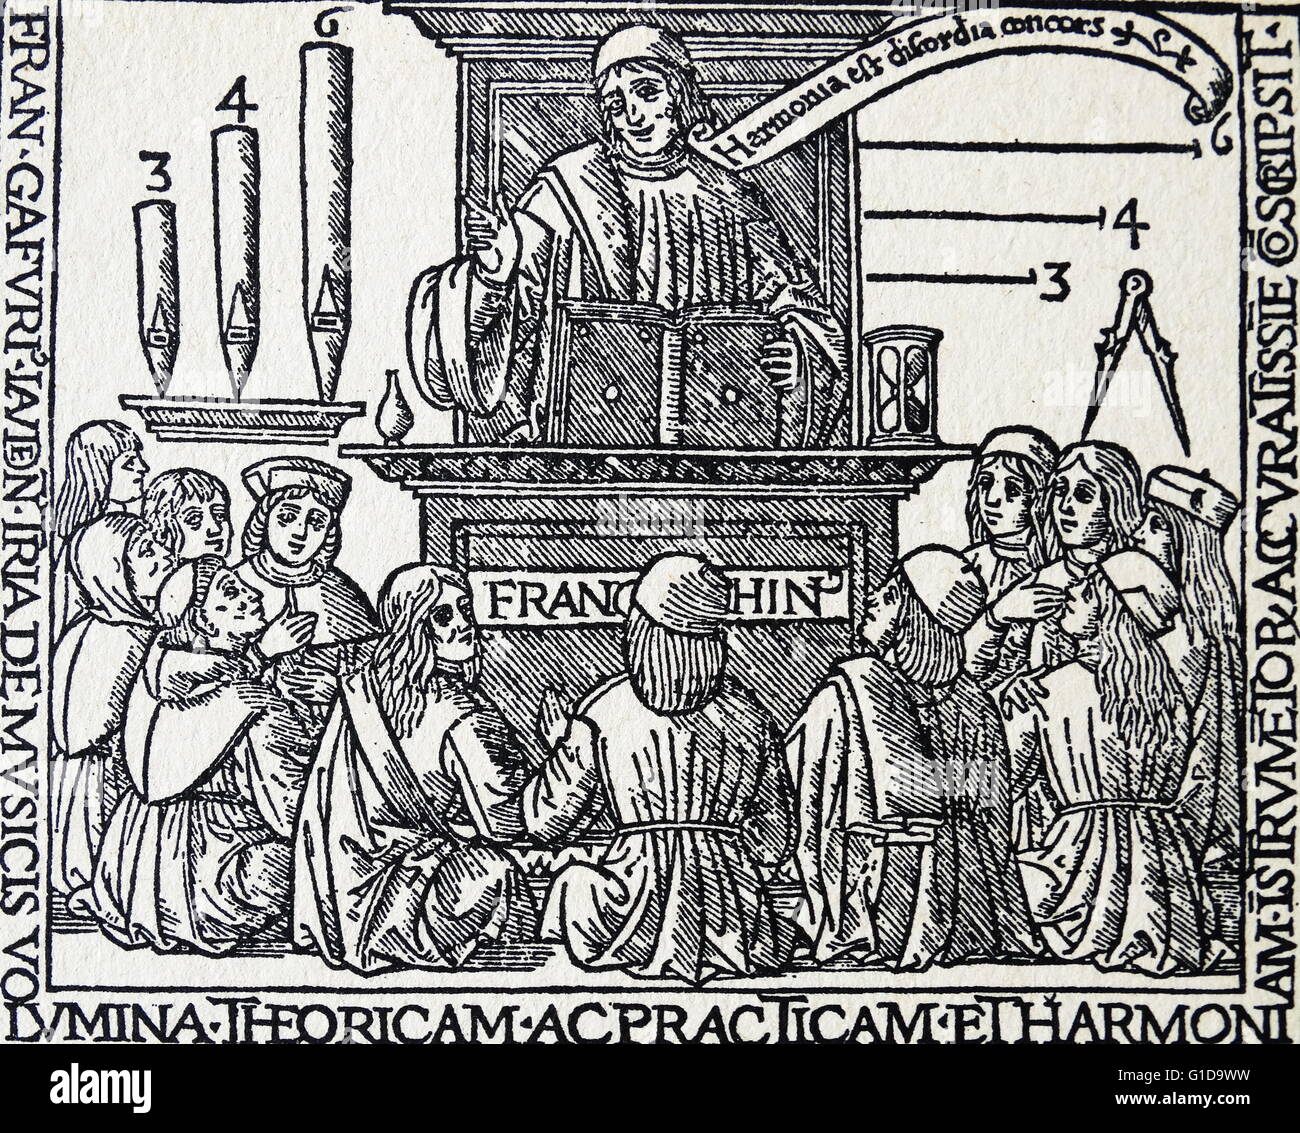 De Harmonia musicorum instrumentorum; Franchinus Gaffurius fra dodici gli studiosi di musica. 1496. Franchinus Gaffurius (Franchino Gaffurio; 14 Gennaio 1451 - 25 giugno 1522) era un italiano teorico musicale e compositore del Rinascimento Foto Stock